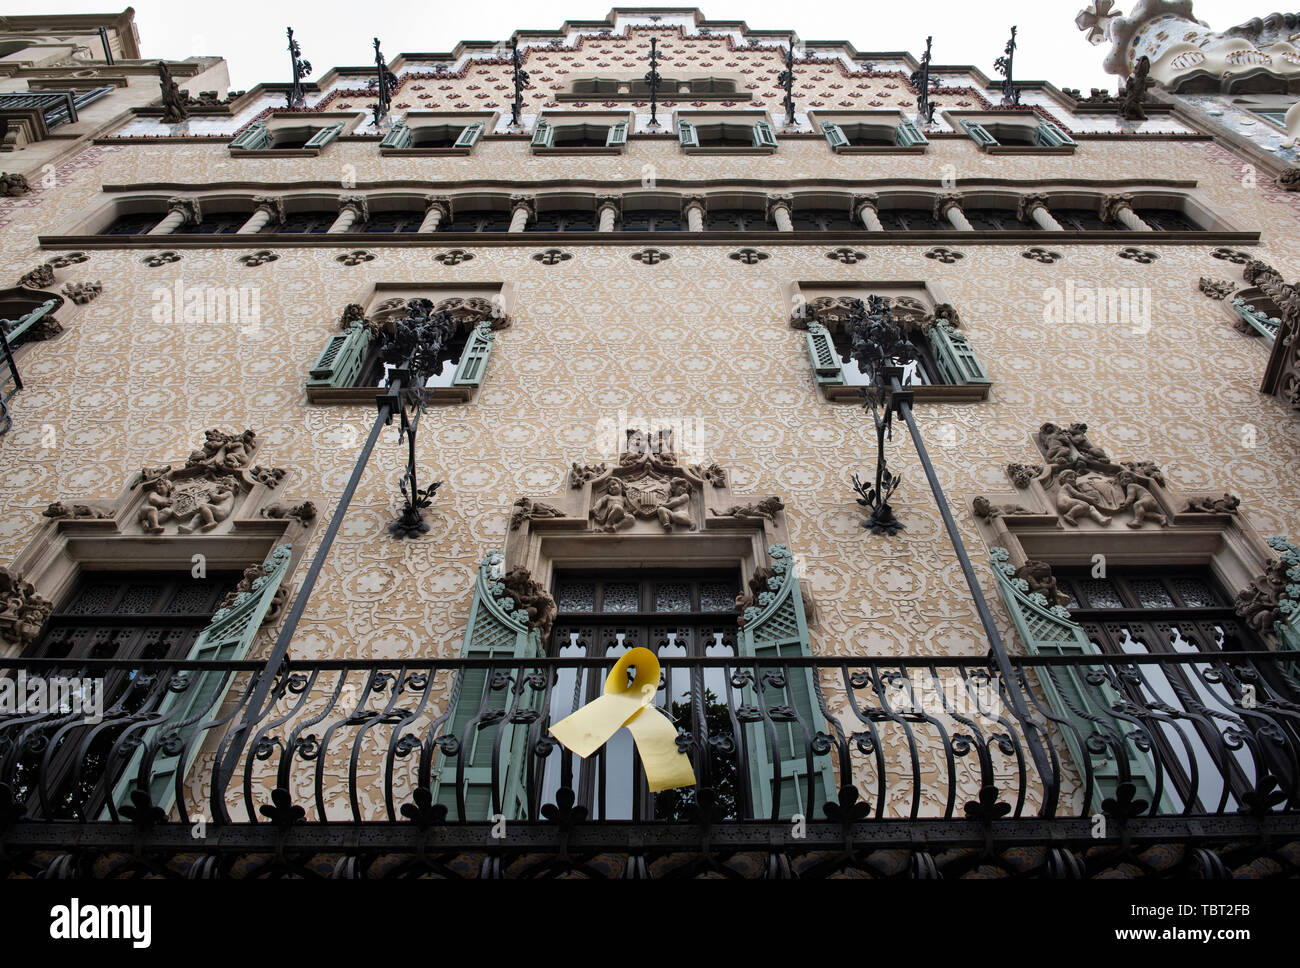 Über der Stadt Barcelona, in öffentlichen Gebäuden, lokale Unternehmen und Wohnungen hängen gelbe Bänder in Unterstützung des inhaftierten Pro - Unabhängigkeit der Politiker. Stockfoto